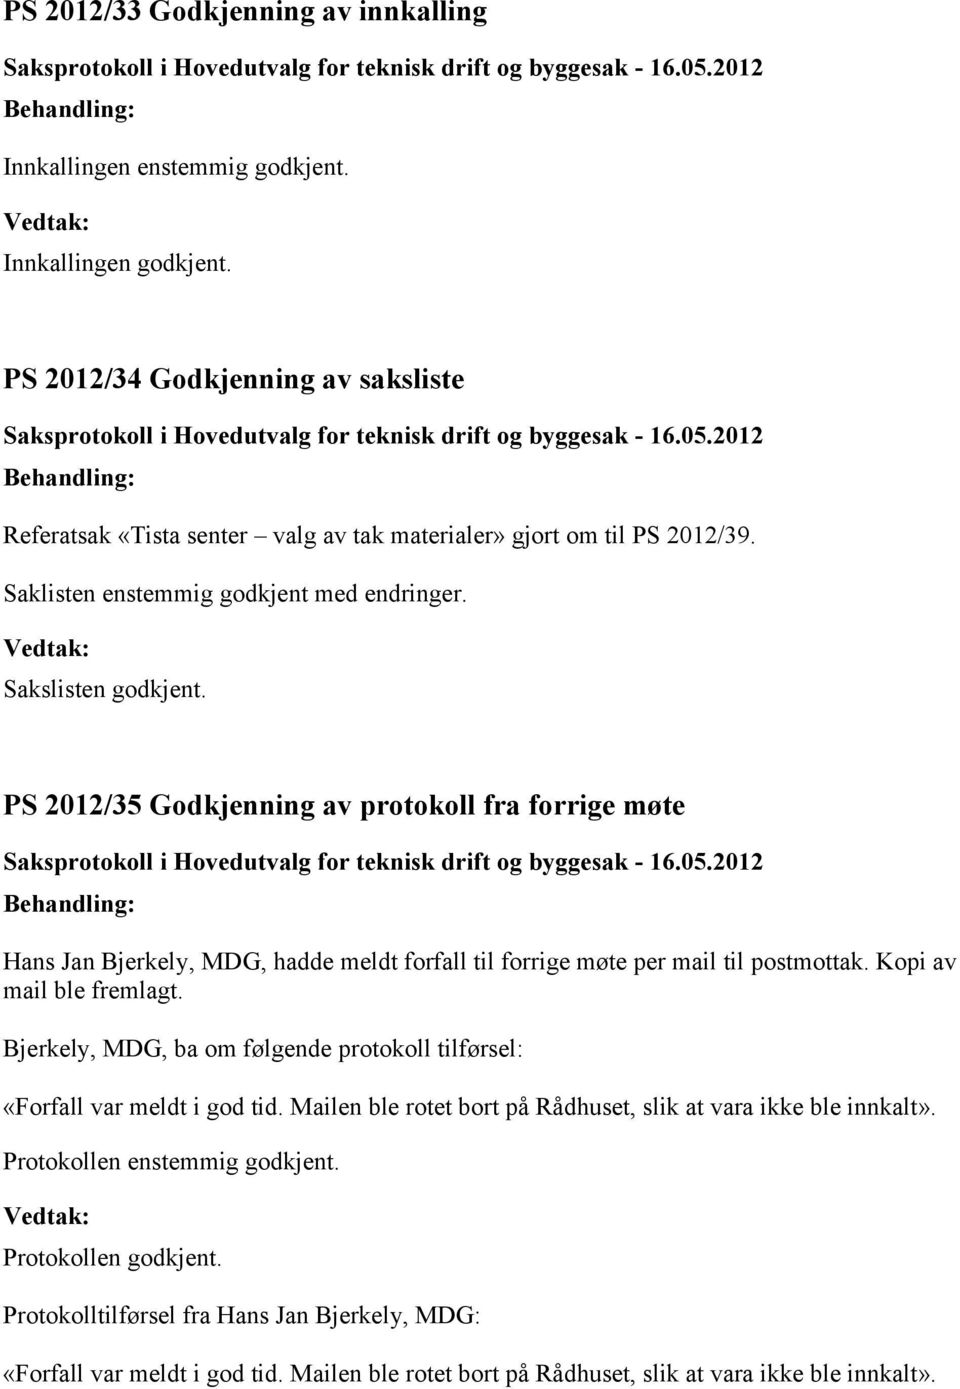 2012/35 Godkjenning av protokoll fra forrige møte Hans Jan Bjerkely, MDG, hadde meldt forfall til forrige møte per mail til postmottak. Kopi av mail ble fremlagt.